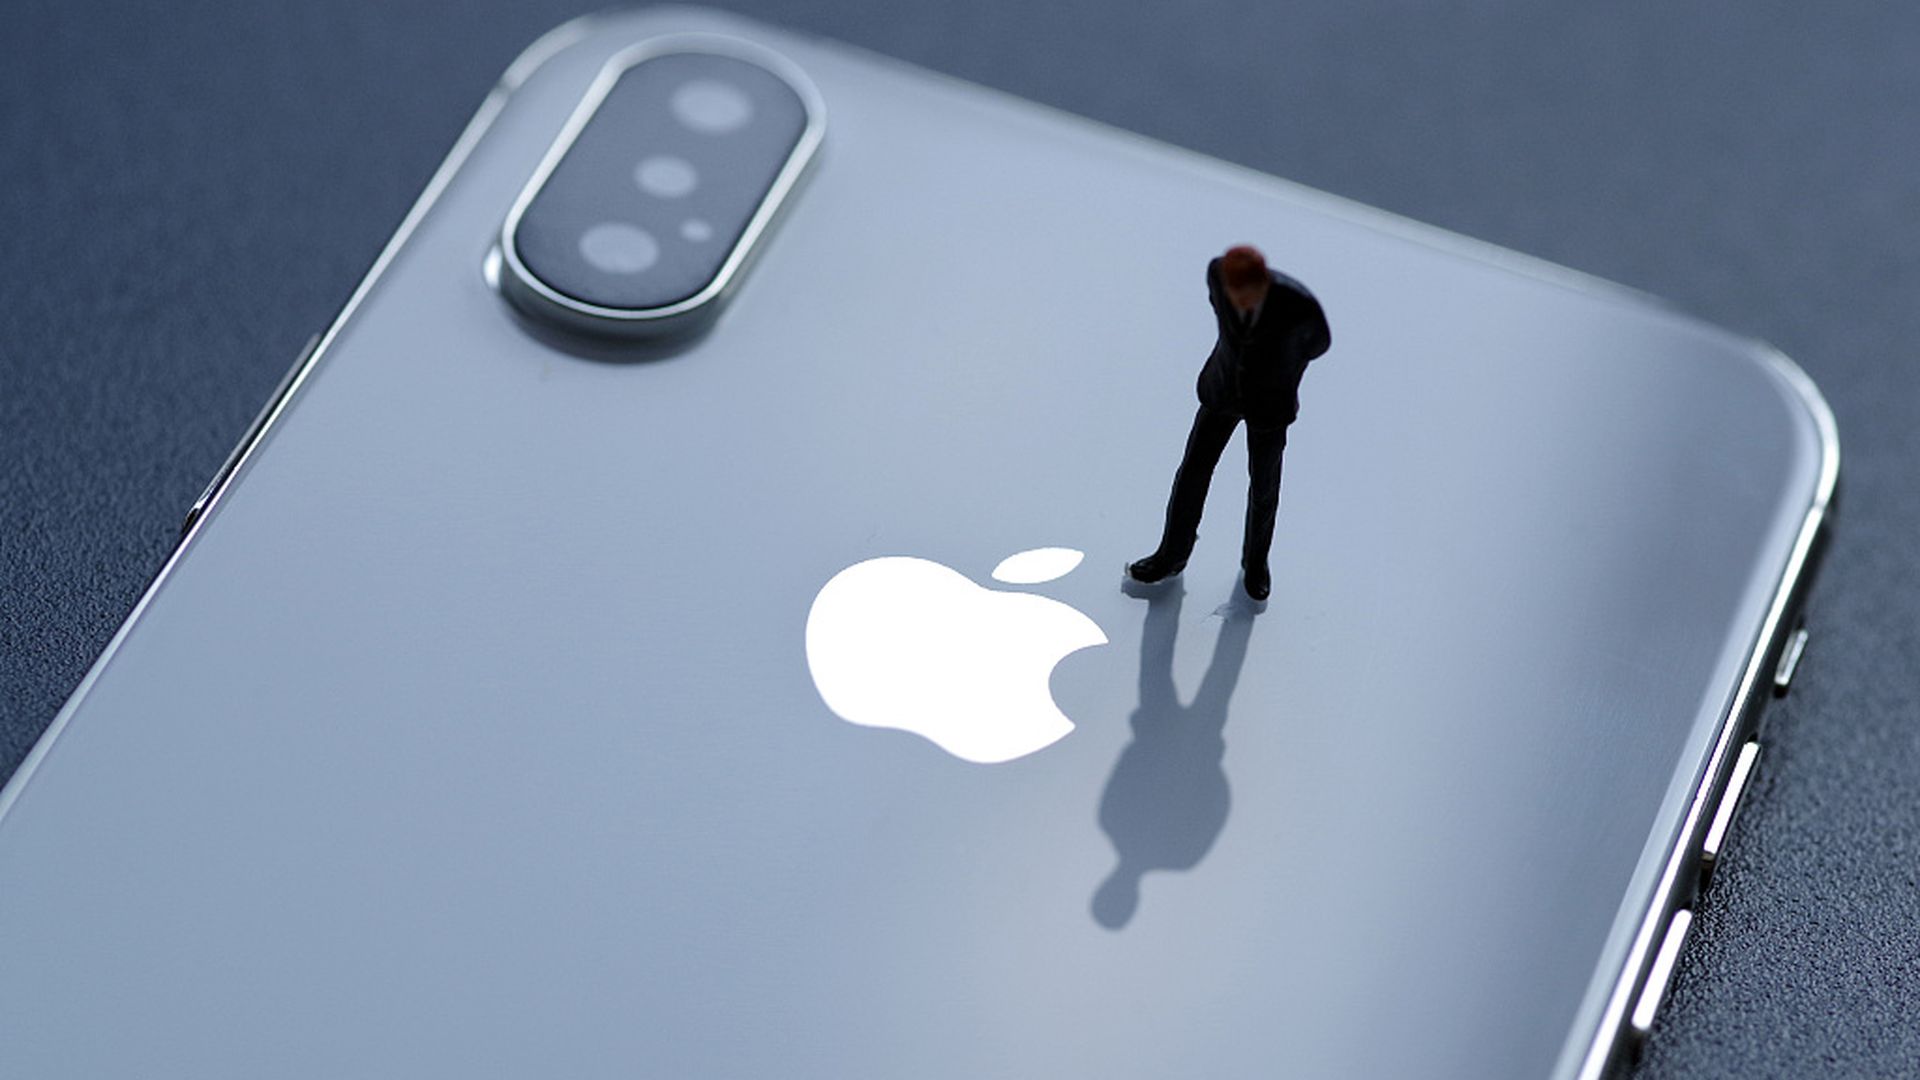 В этой статье мы расскажем о судебном процессе Apple iPhone по поводу проблем с аккумулятором, а также о том, как получить деньги от судебного процесса Apple, если вы пострадали.